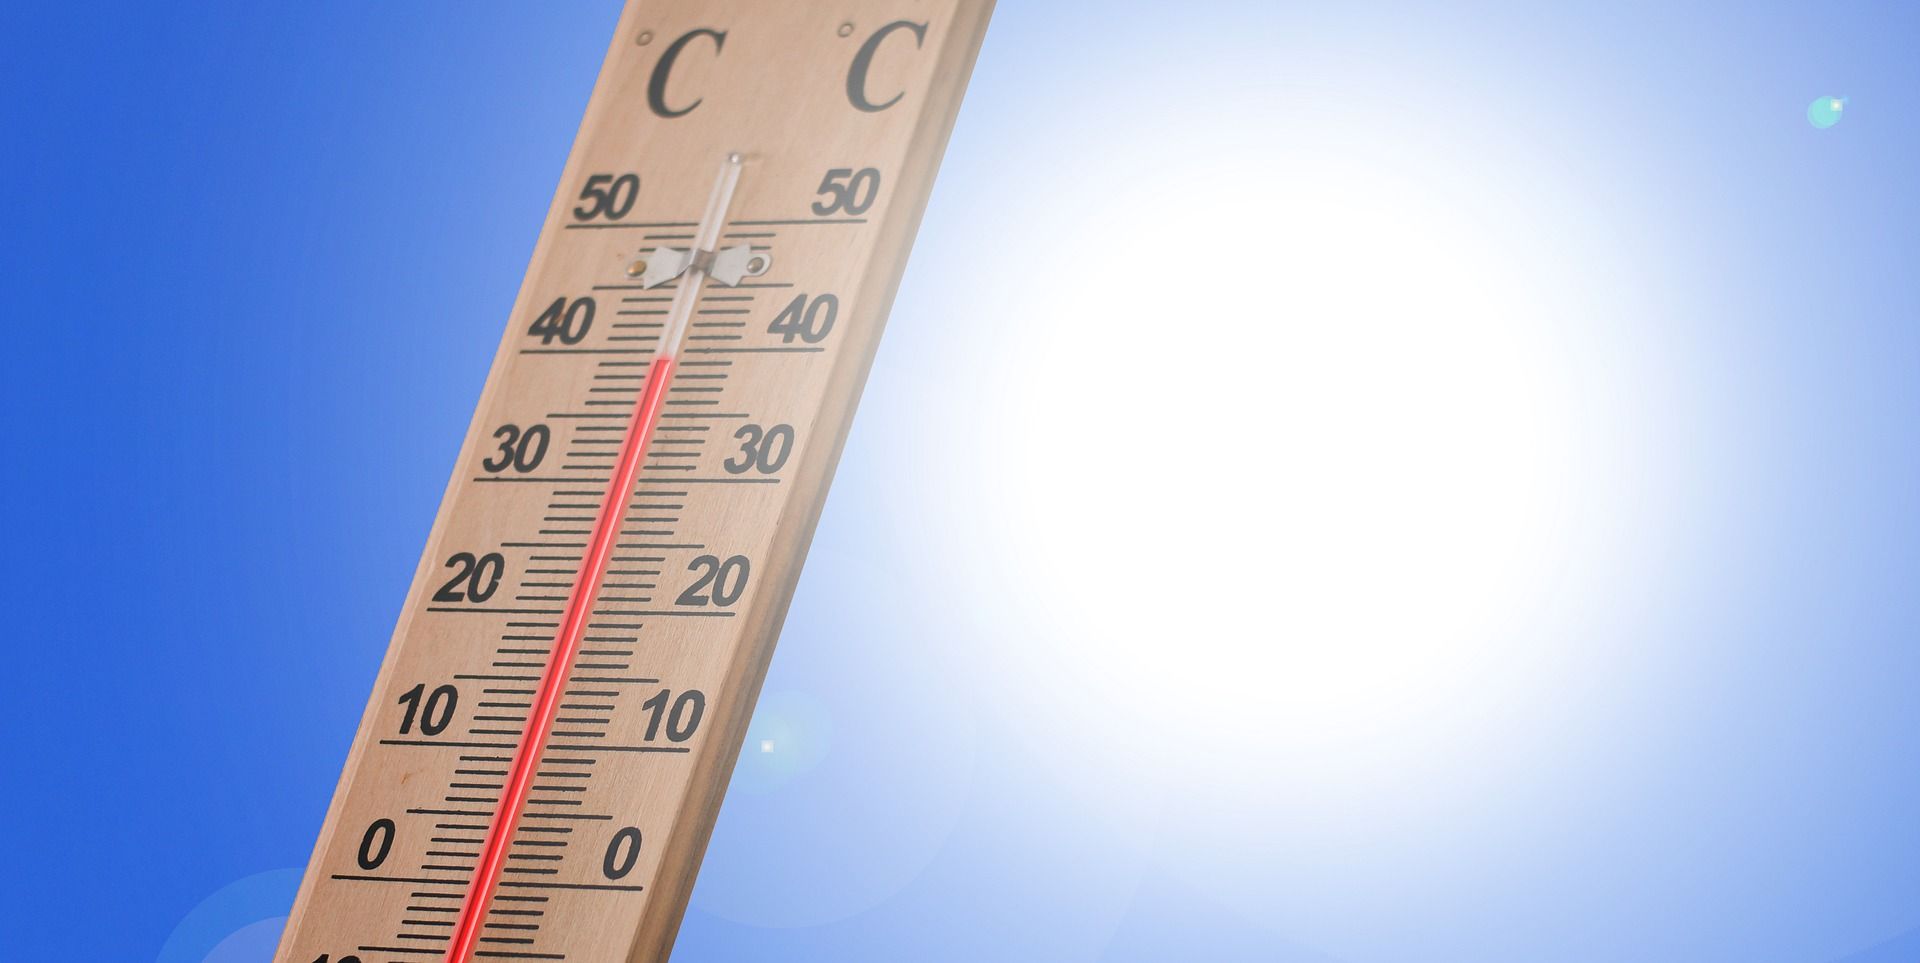 48°C attendus en Espagne : vers de nouveaux records ?